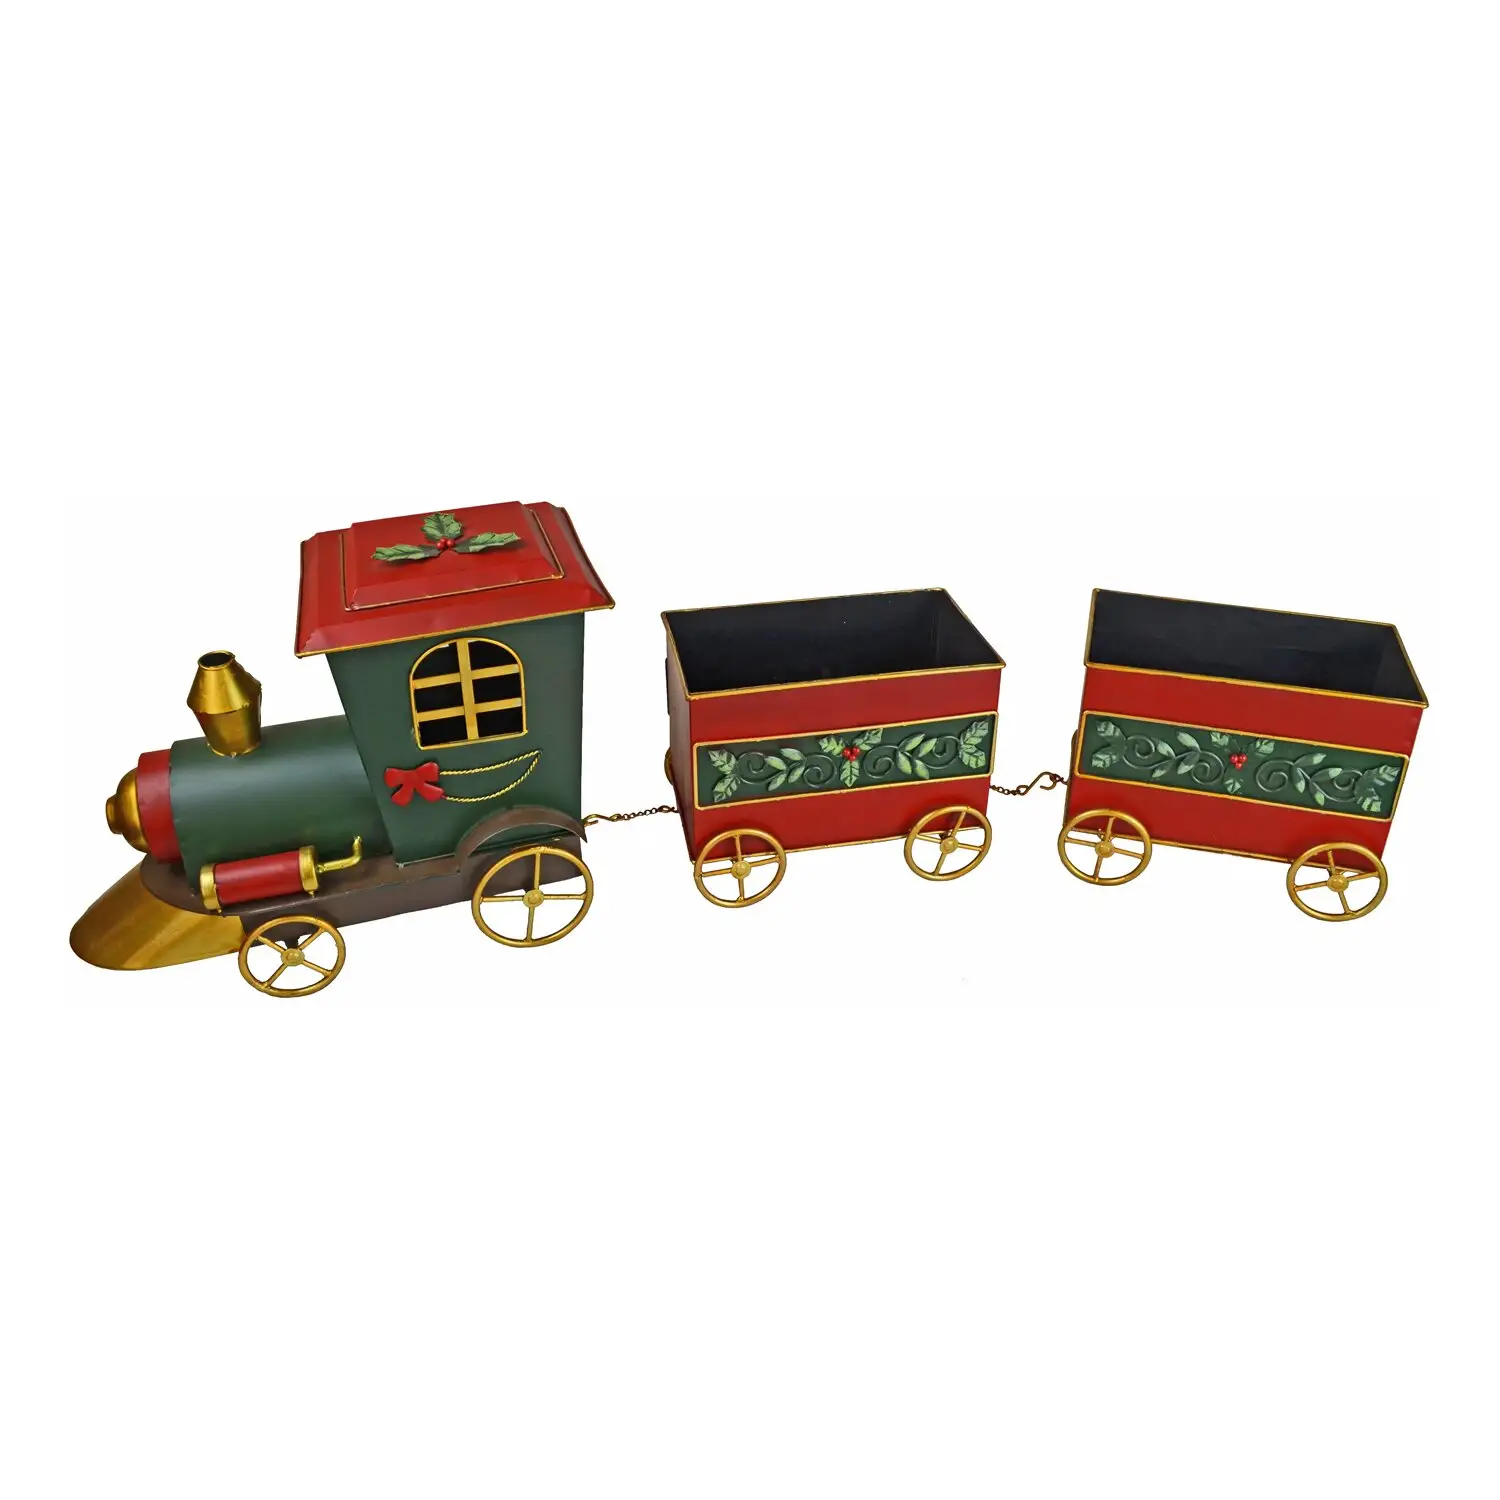 Vận chuyển hàng hóa Train Set trang trí giọng cho Giáng sinh kỳ nghỉ trang trí cho nhà bên sự kiện và món quà hoàn hảo cho gia đình bạn bè